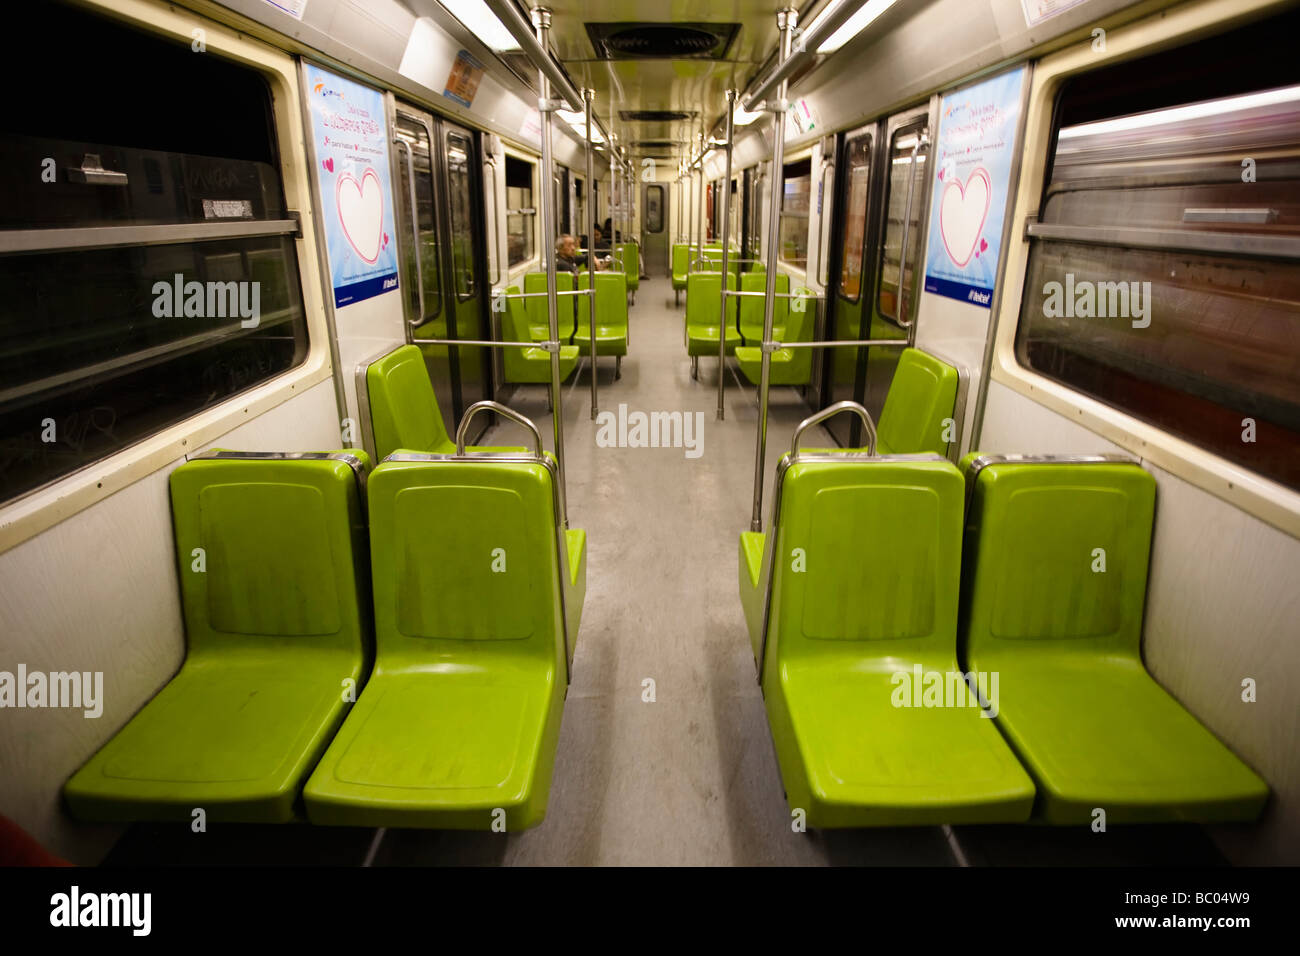 Arriba 90+ imagen vagones del metro df